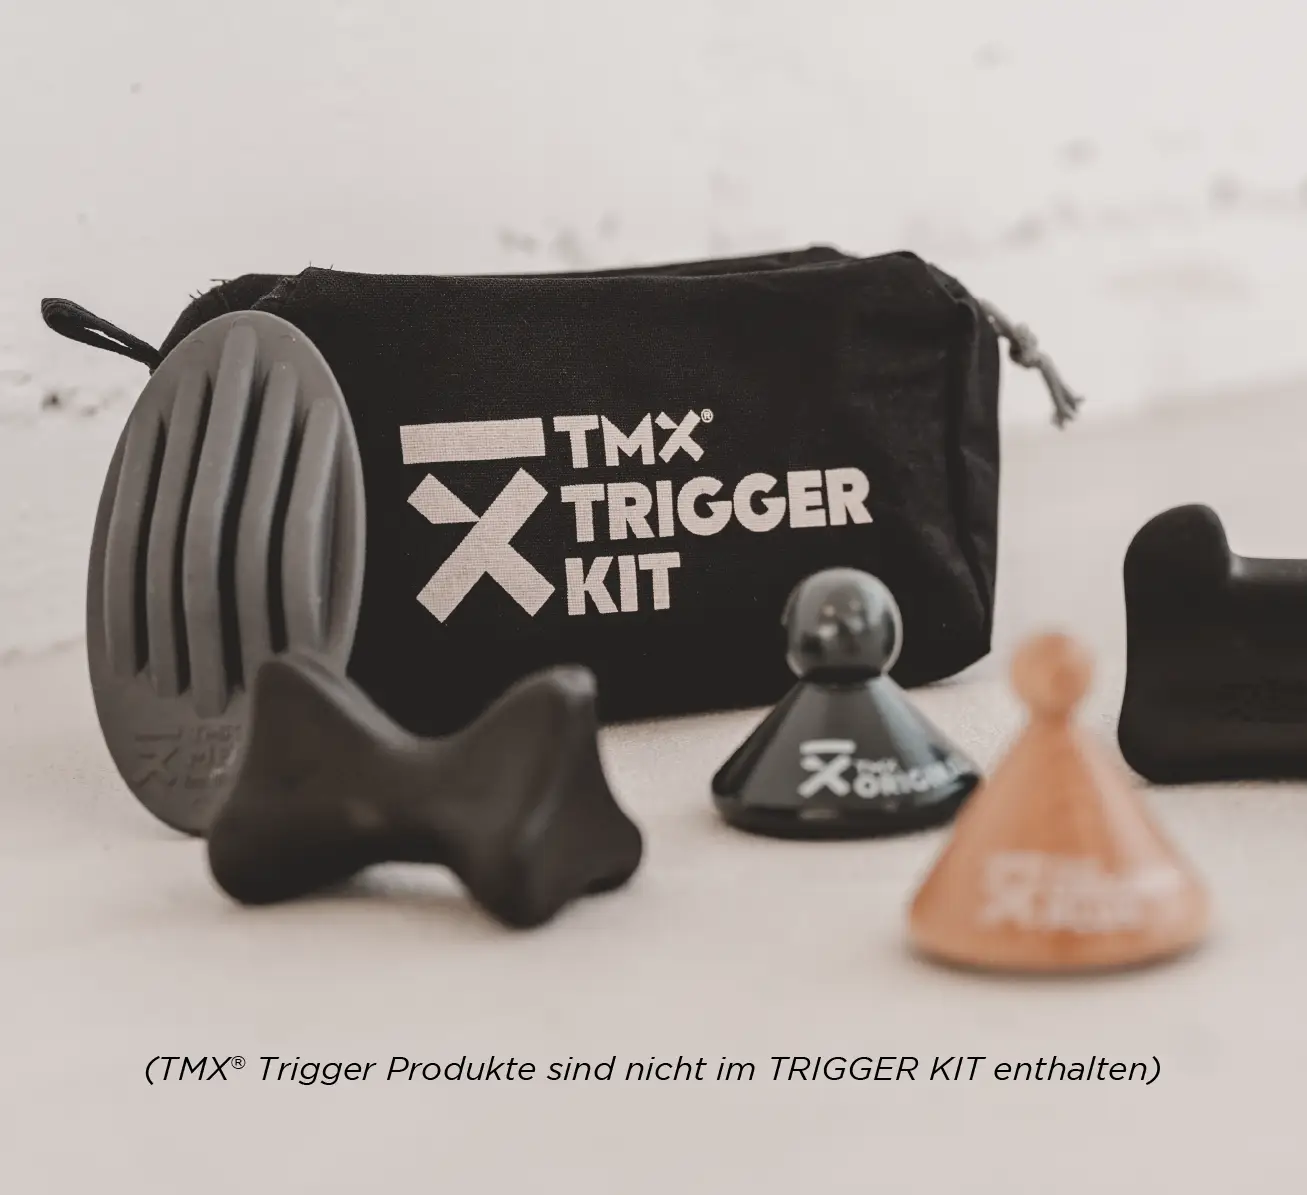 TMX TRIGGER KIT - mit TMX Produkten Mood Bild 2